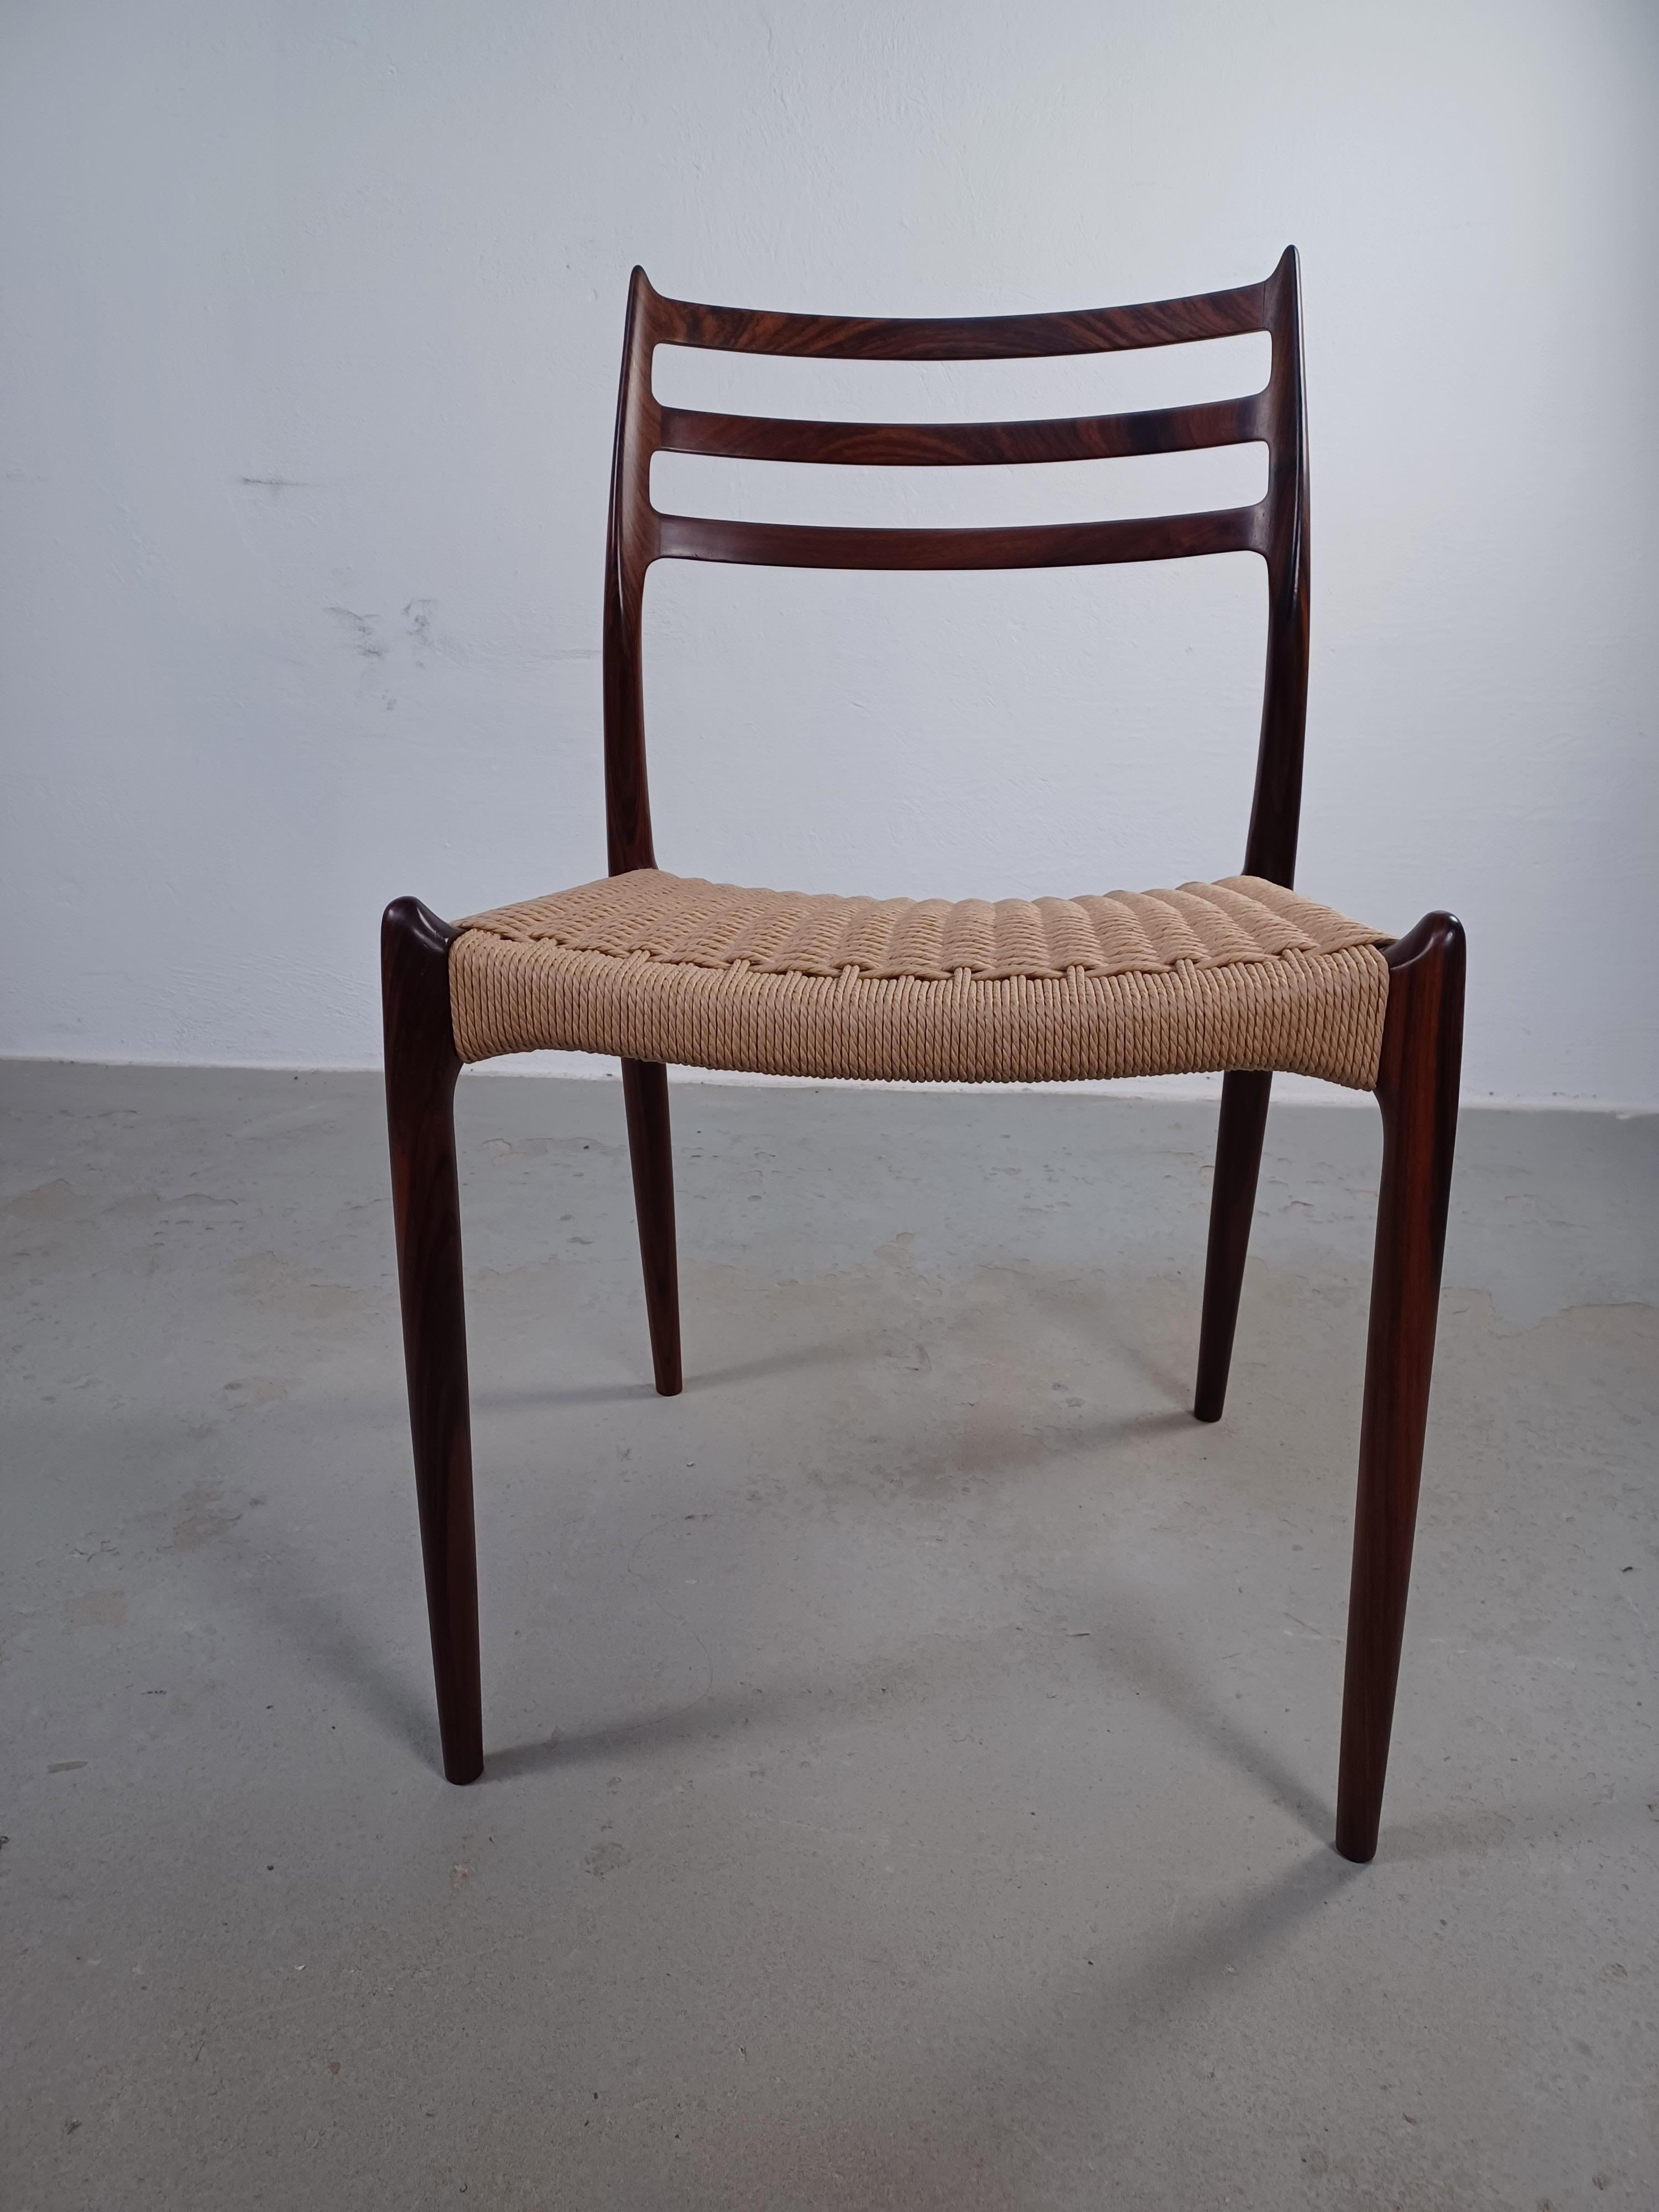 L'emblématique chaise de salle à manger modèle 78 a été conçue en 1954 par Niels O. Møller pour J.L.A. Møllers Møbelfabrik. Le modèle, avec ses formes organiques et ses pièces de bois qui se fondent les unes dans les autres, témoigne de ce que de